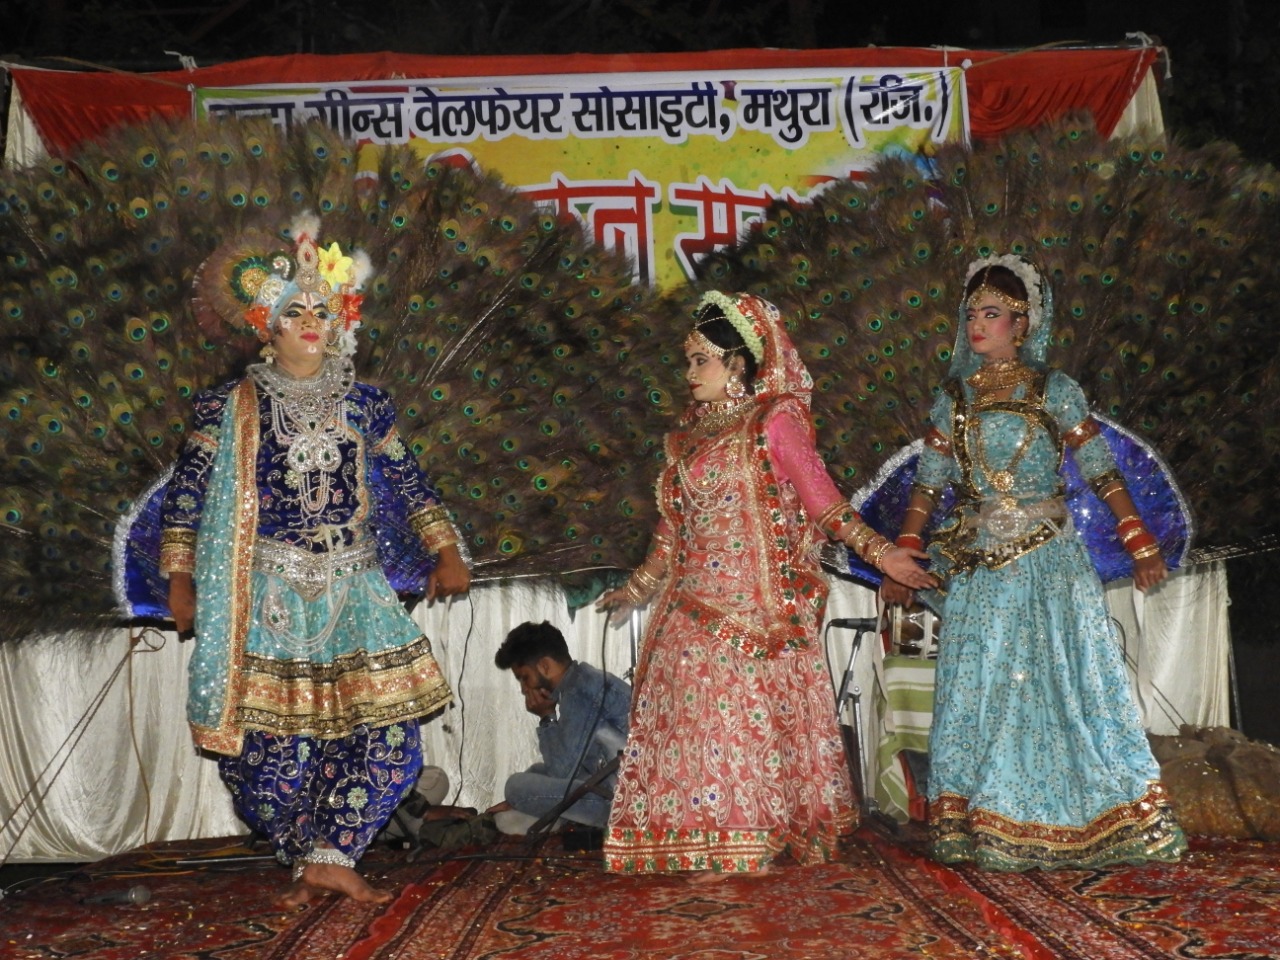 मथुरा के चंदा ग्रीन अपार्टमेंट में होली मिलन समारोह का हुआ आयोजन | New India Times